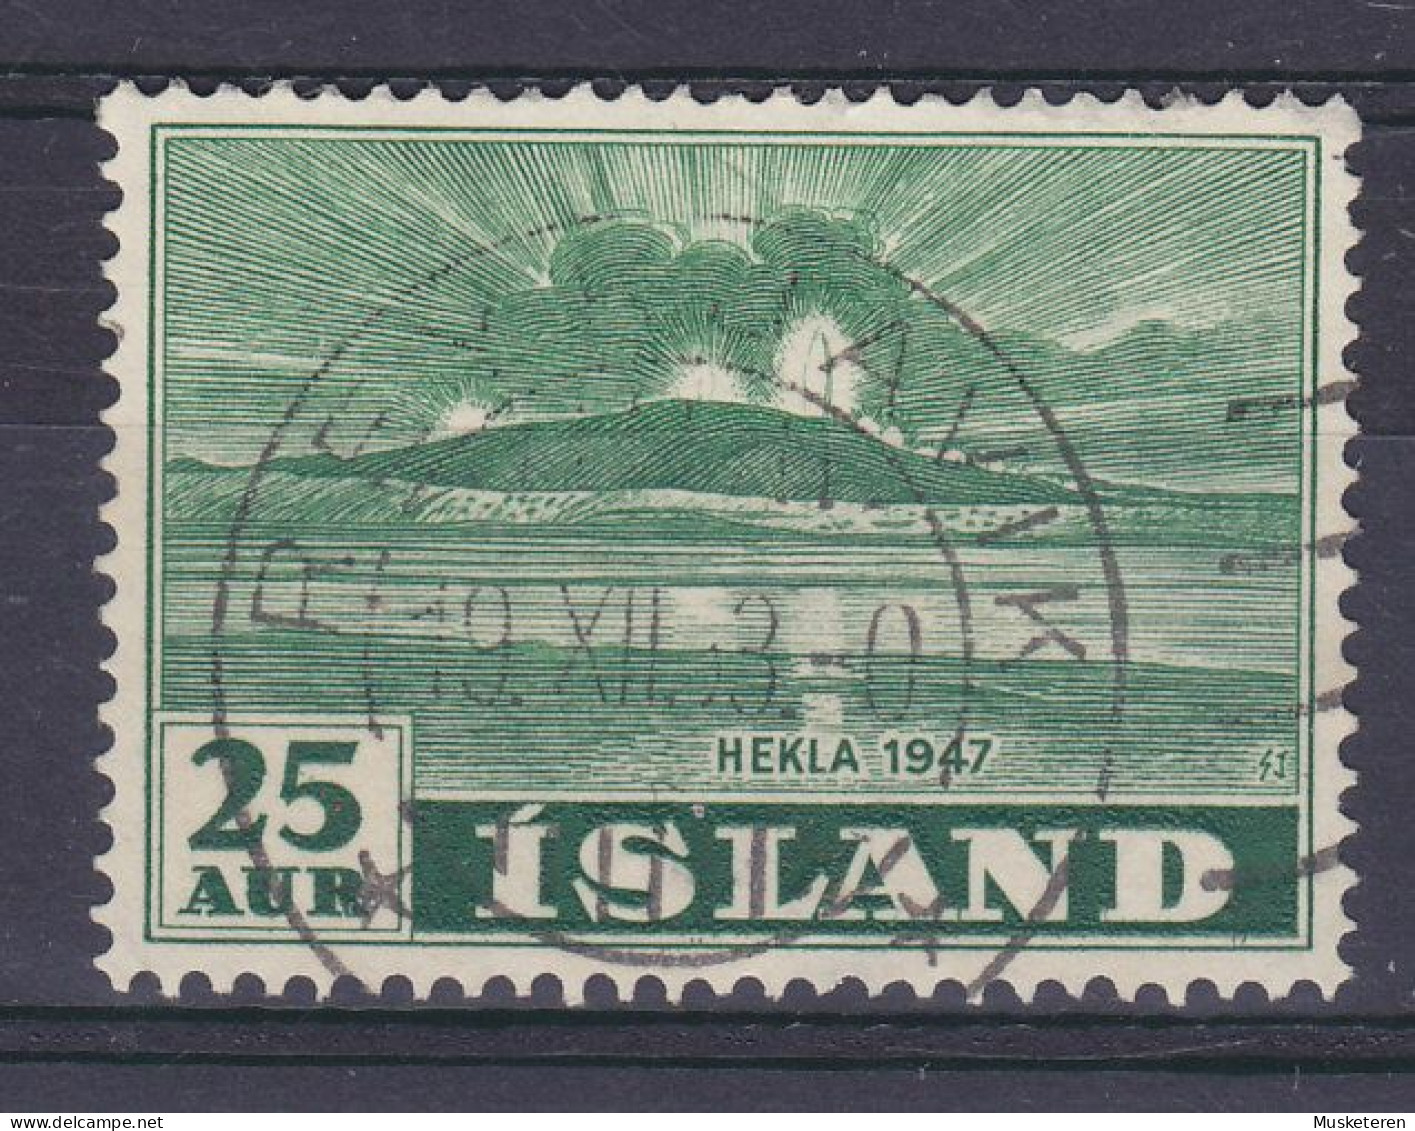 Iceland 1948 Mi. 248, 25 Aur Vulkan Vom Meer Aus Gesehen Deluxe REYKJAVIK Cancel !! - Usados